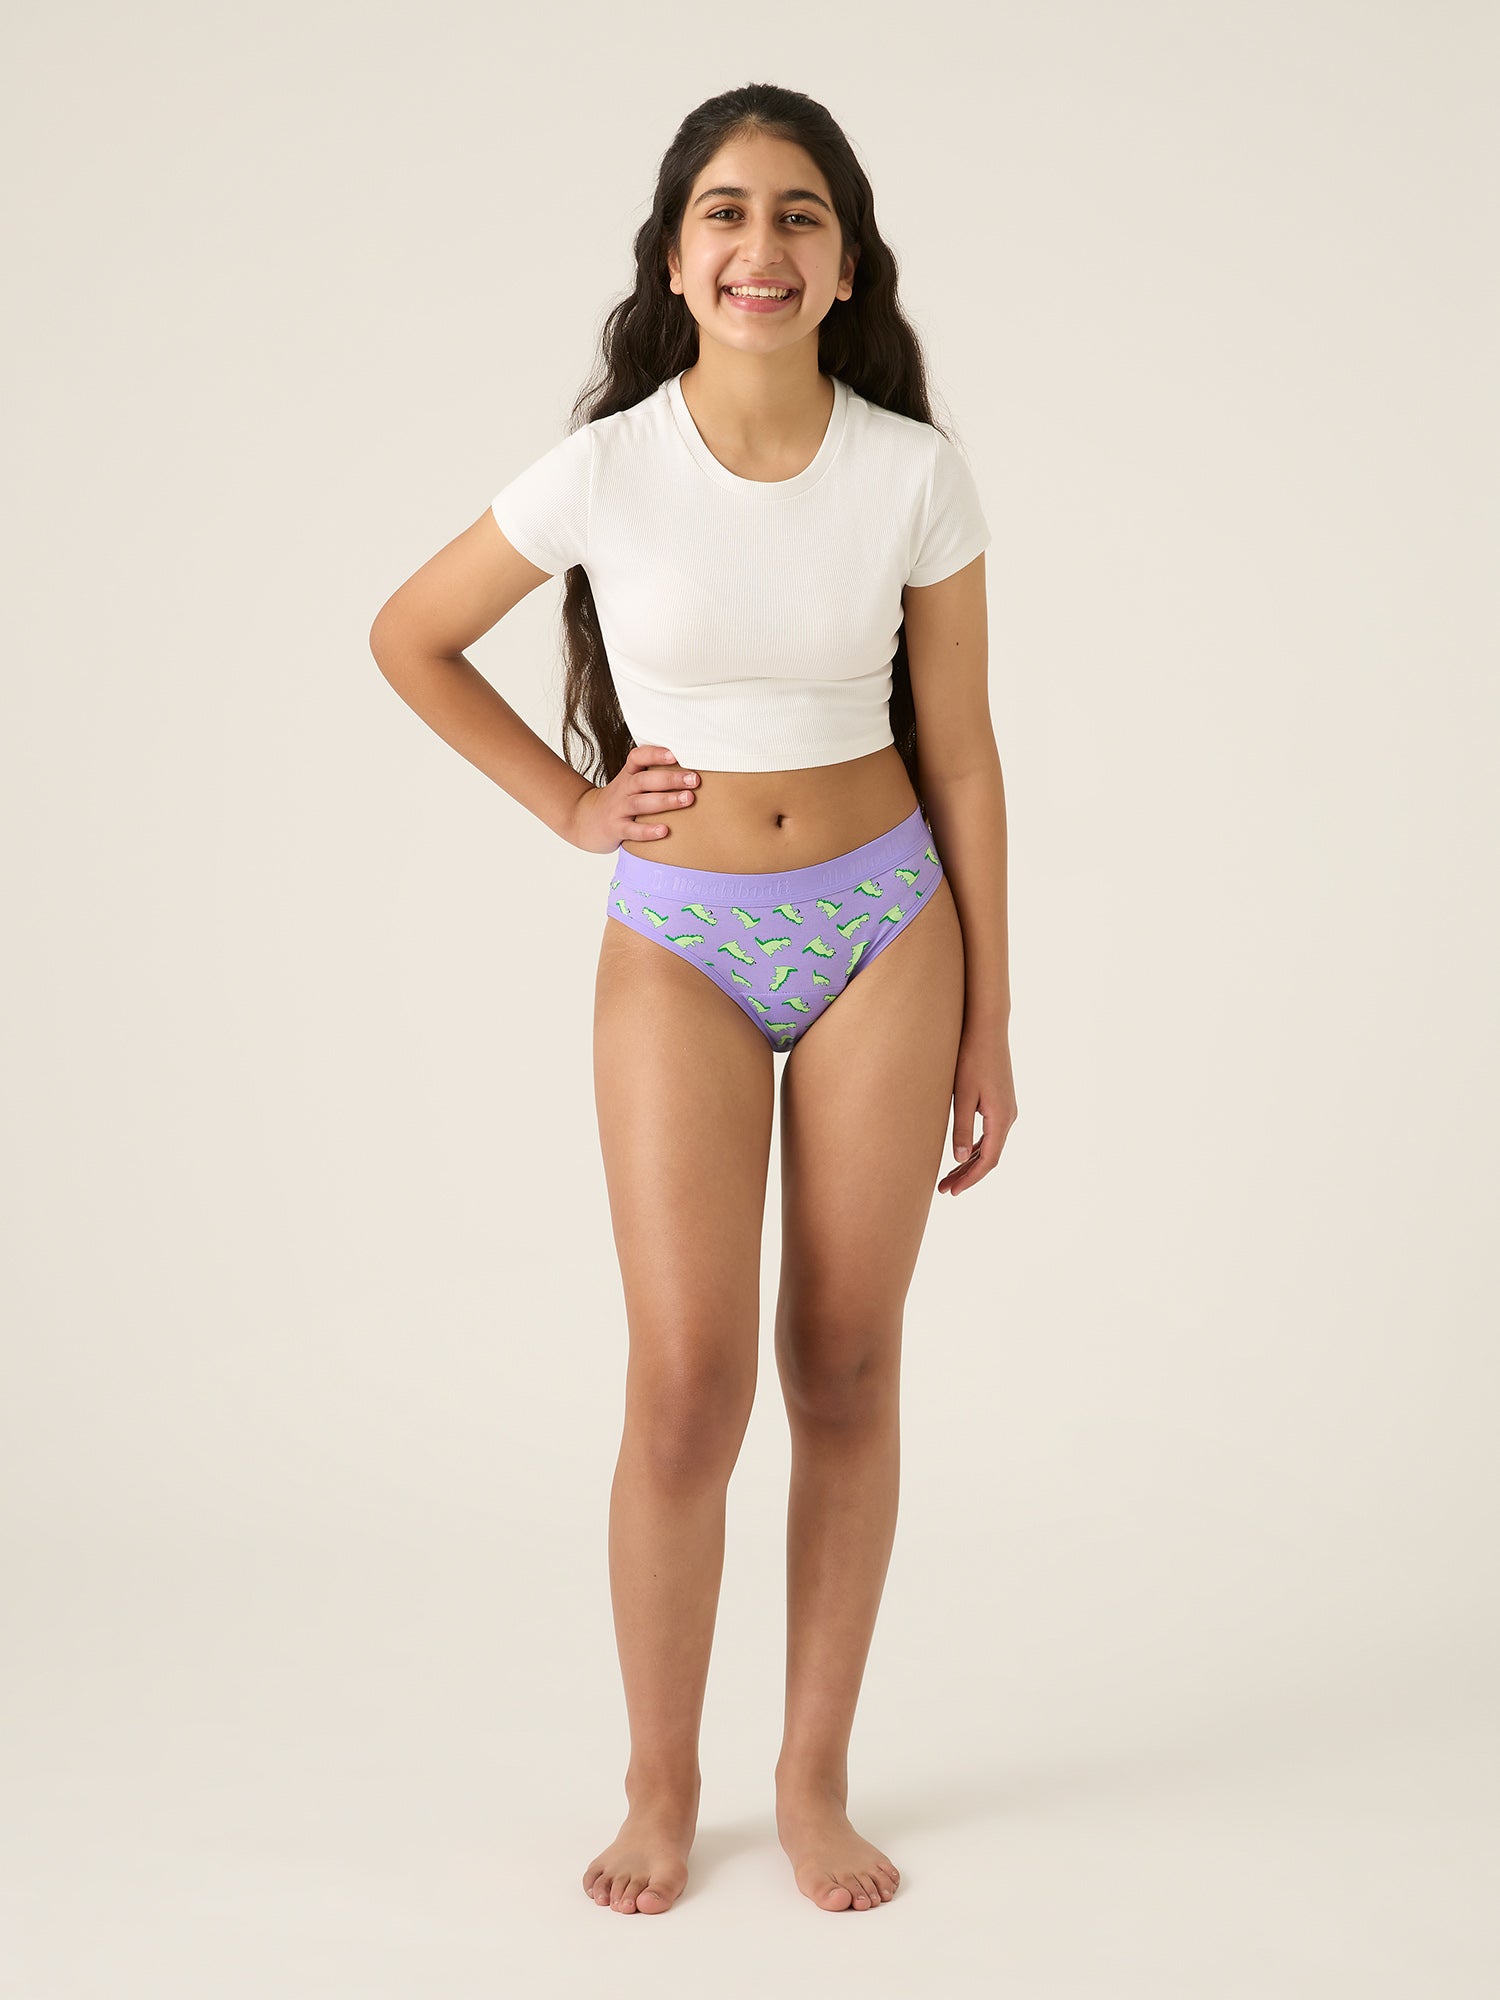 preteen model panties Amazon.com